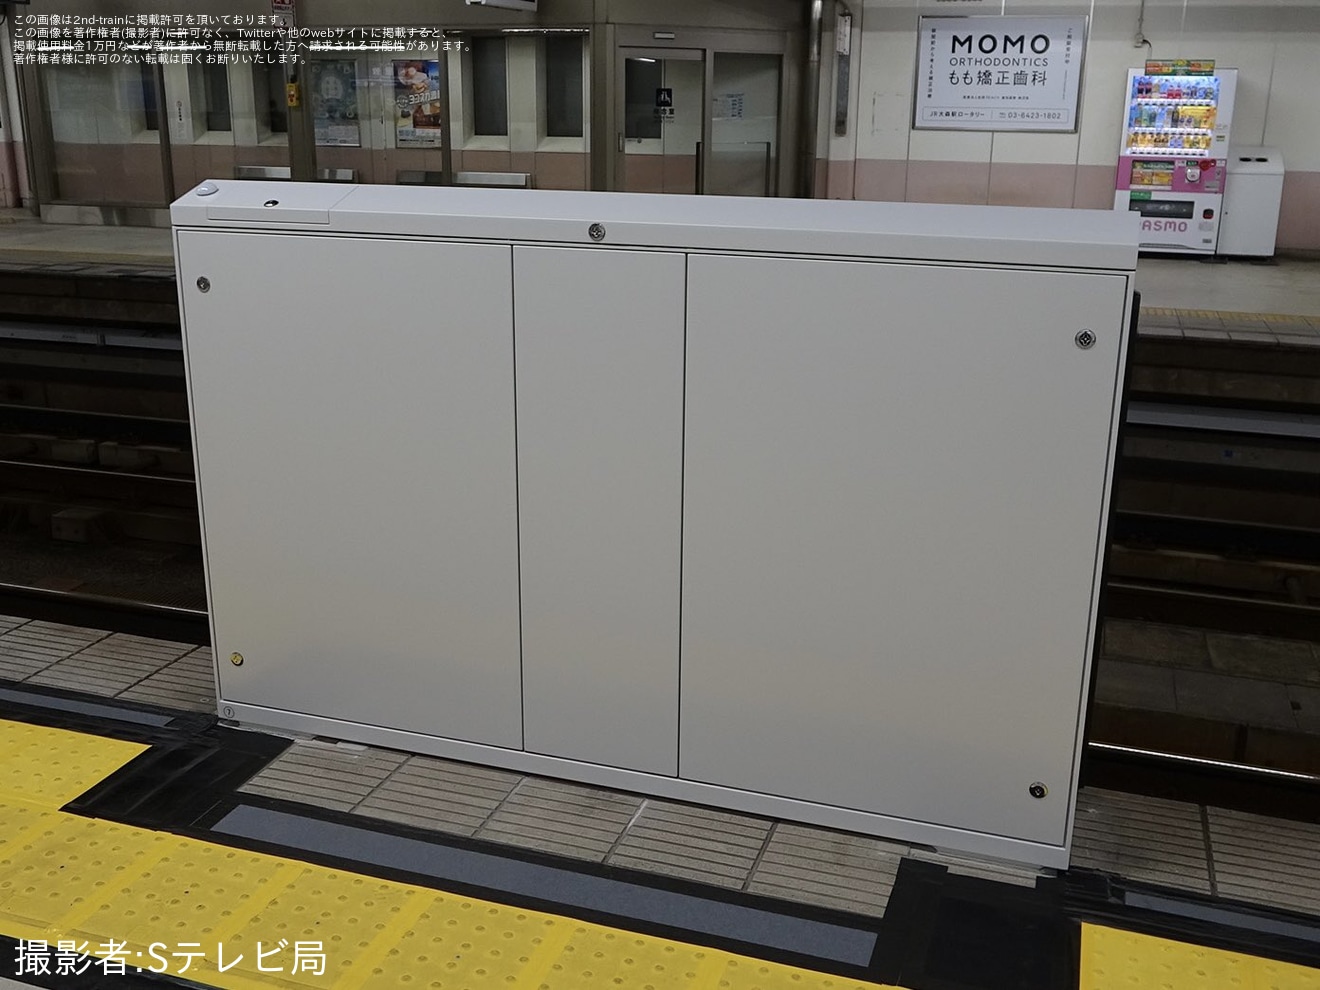 【京急】梅屋敷駅2番線にホームドアが設置の拡大写真